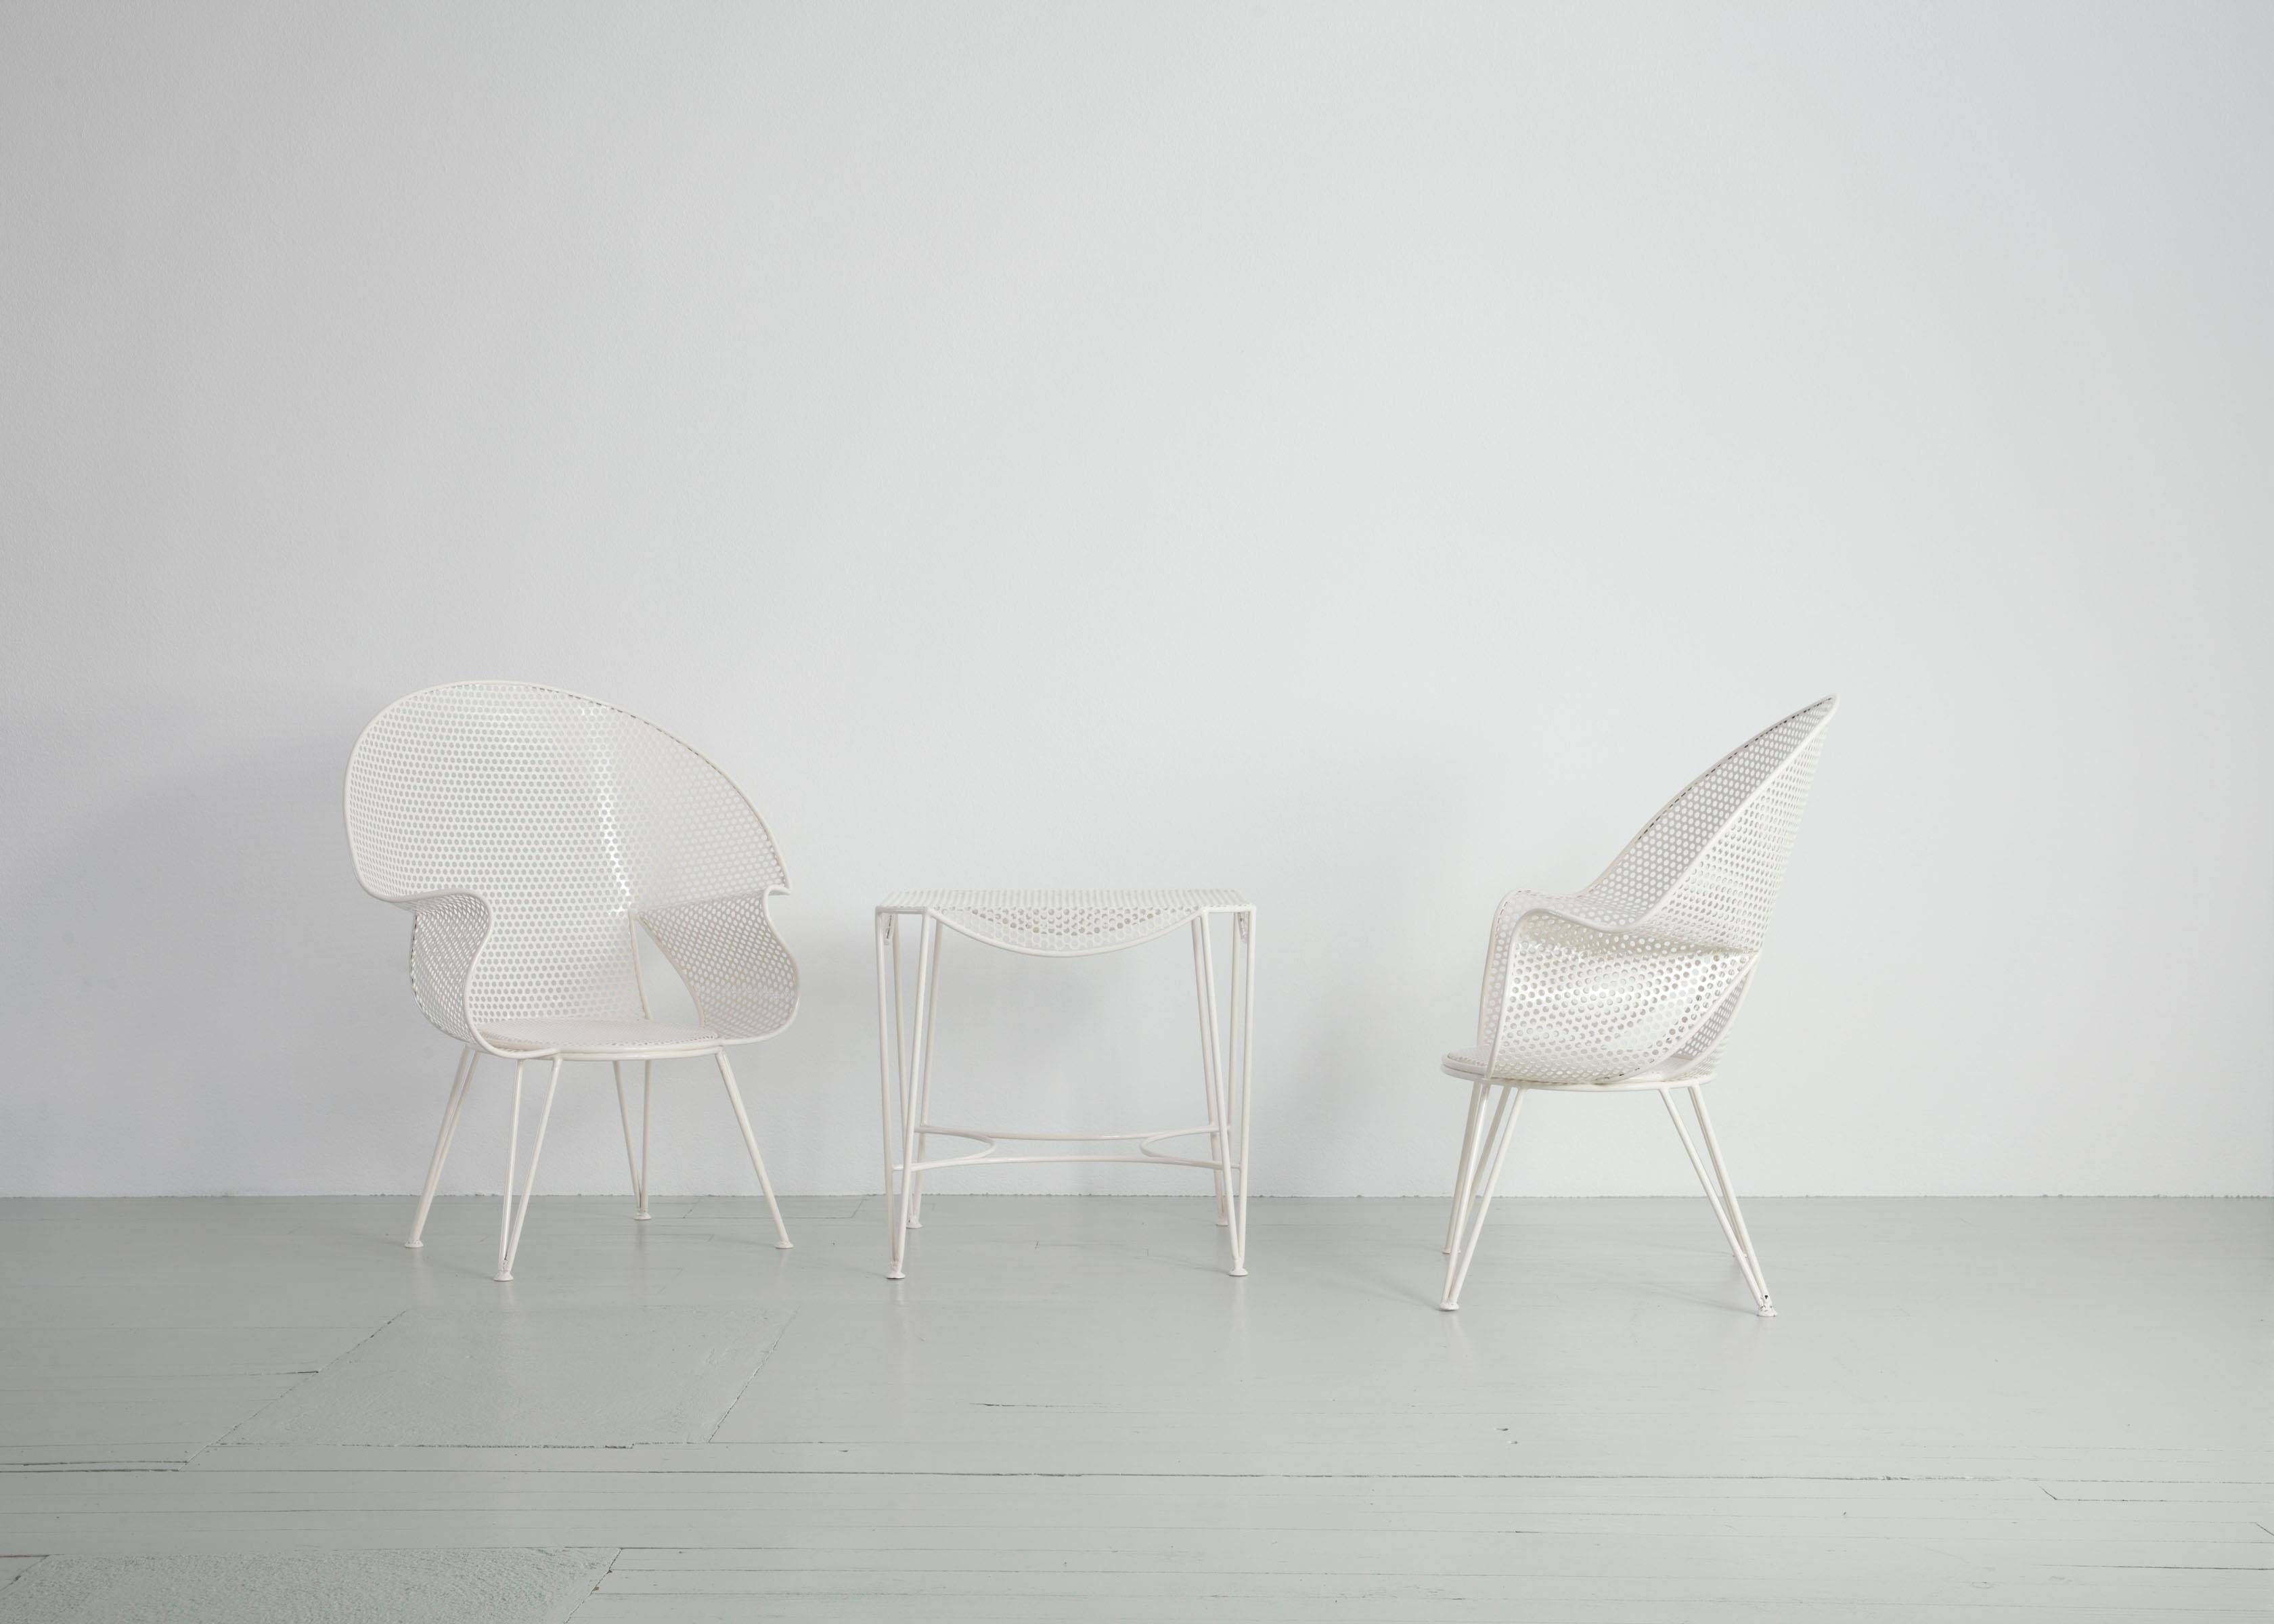 Dieses Set aus drei Gartensesseln und einem Beistelltisch wurde von Giuseppe de Vivo entworfen und in den 1950er Jahren in Italien hergestellt. Abgerundete Formen bilden die Sitze, die auf geraden Beinen ruhen. Auch die Tabelle entspricht diesem